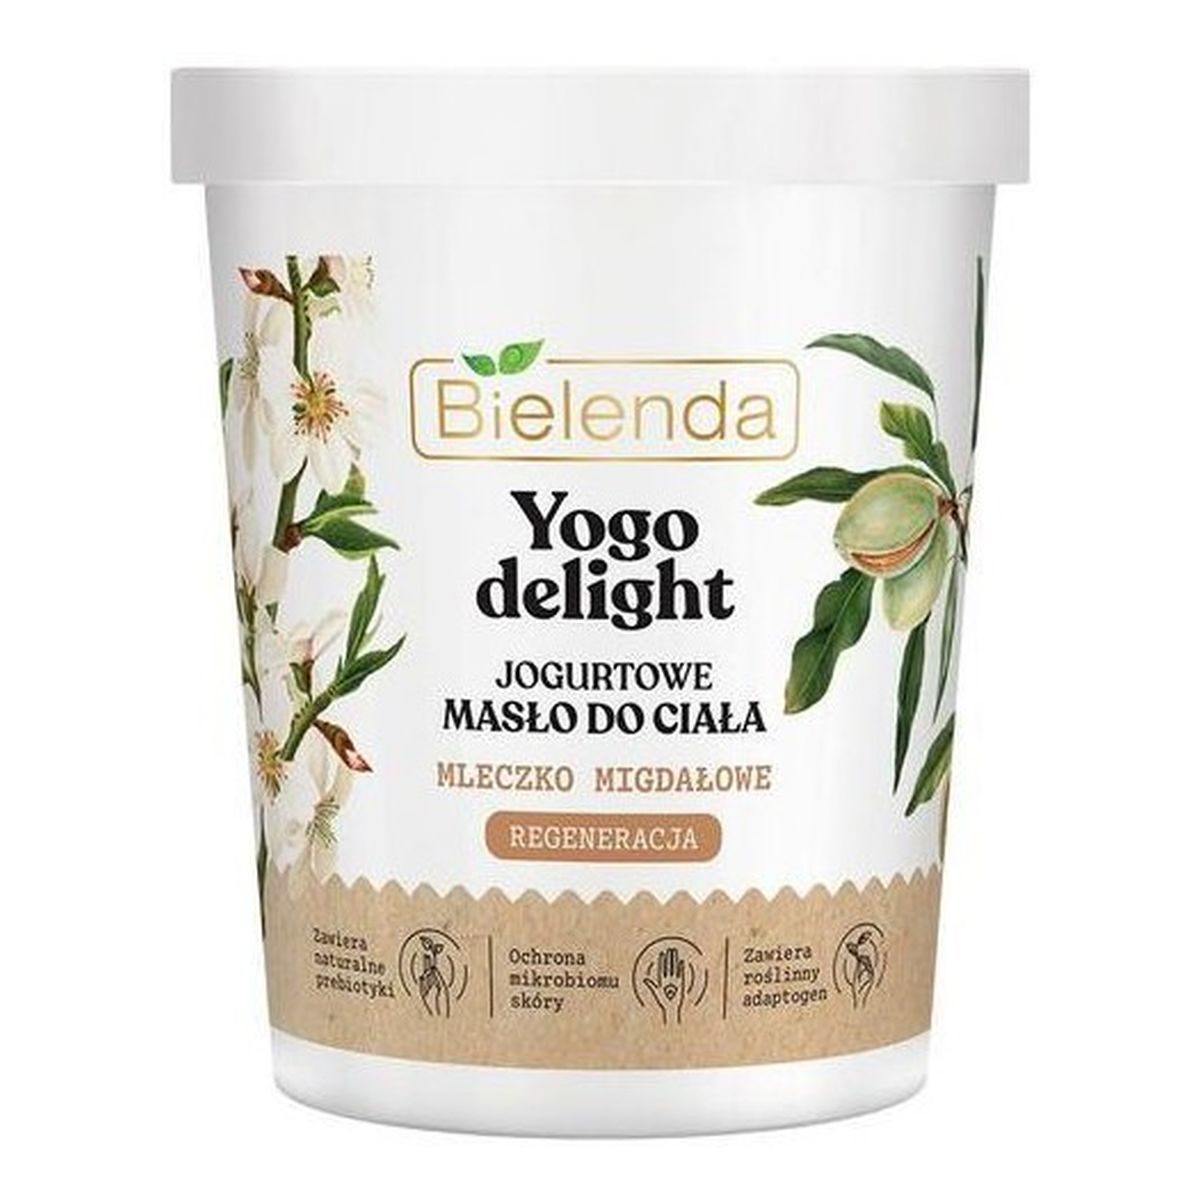 Bielenda Yogo Delight Jogurtowe Masło do ciała regenerujące z mleczkiem migdałowym 200ml